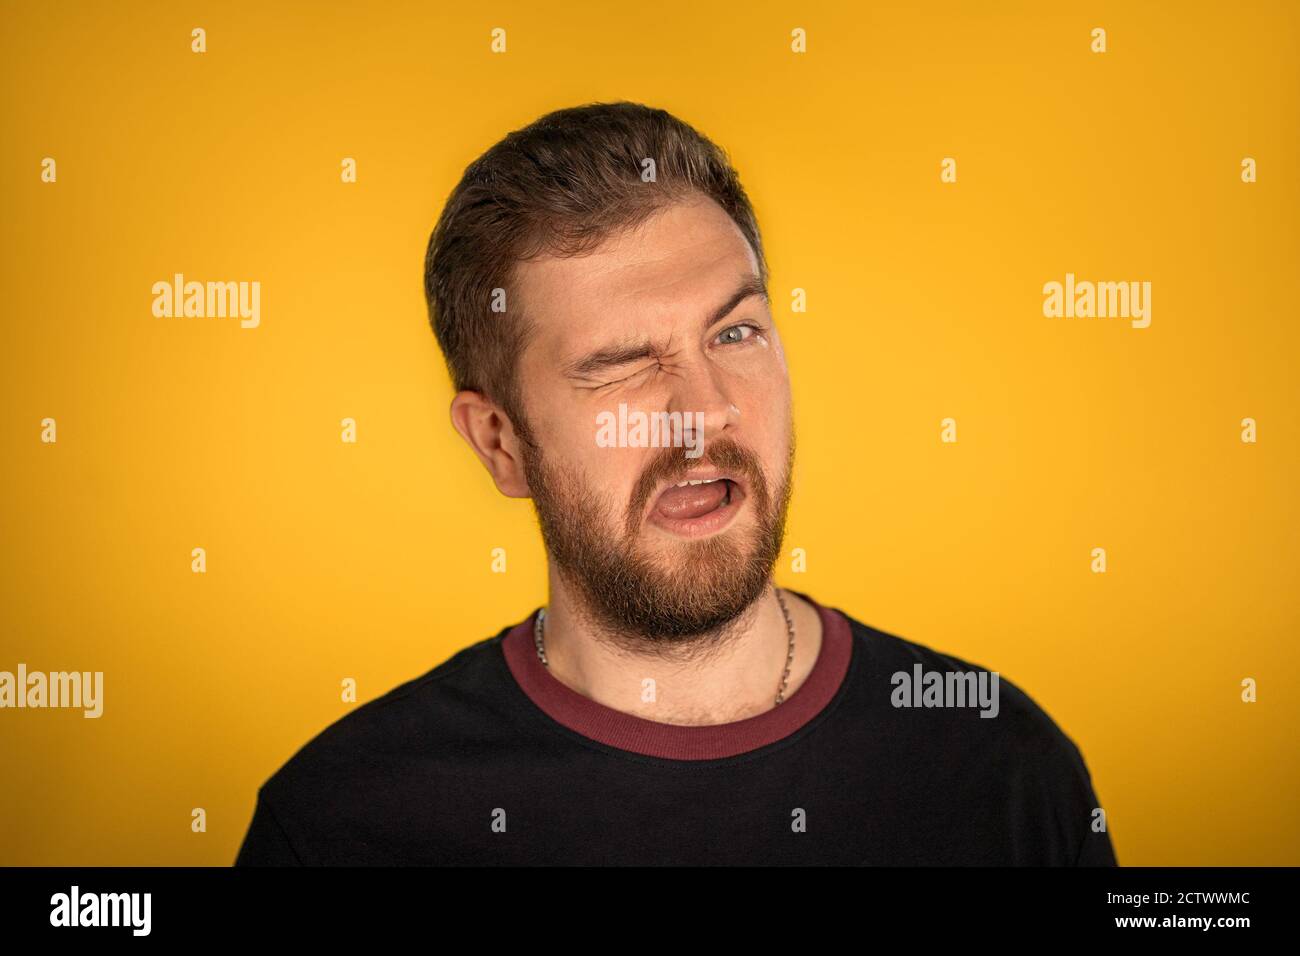 Giovane ragazzo con una barba si inala alla macchina fotografica e mostra la sua lingua. Sfondo isolato giallo nello studio. Foto di alta qualità Foto Stock